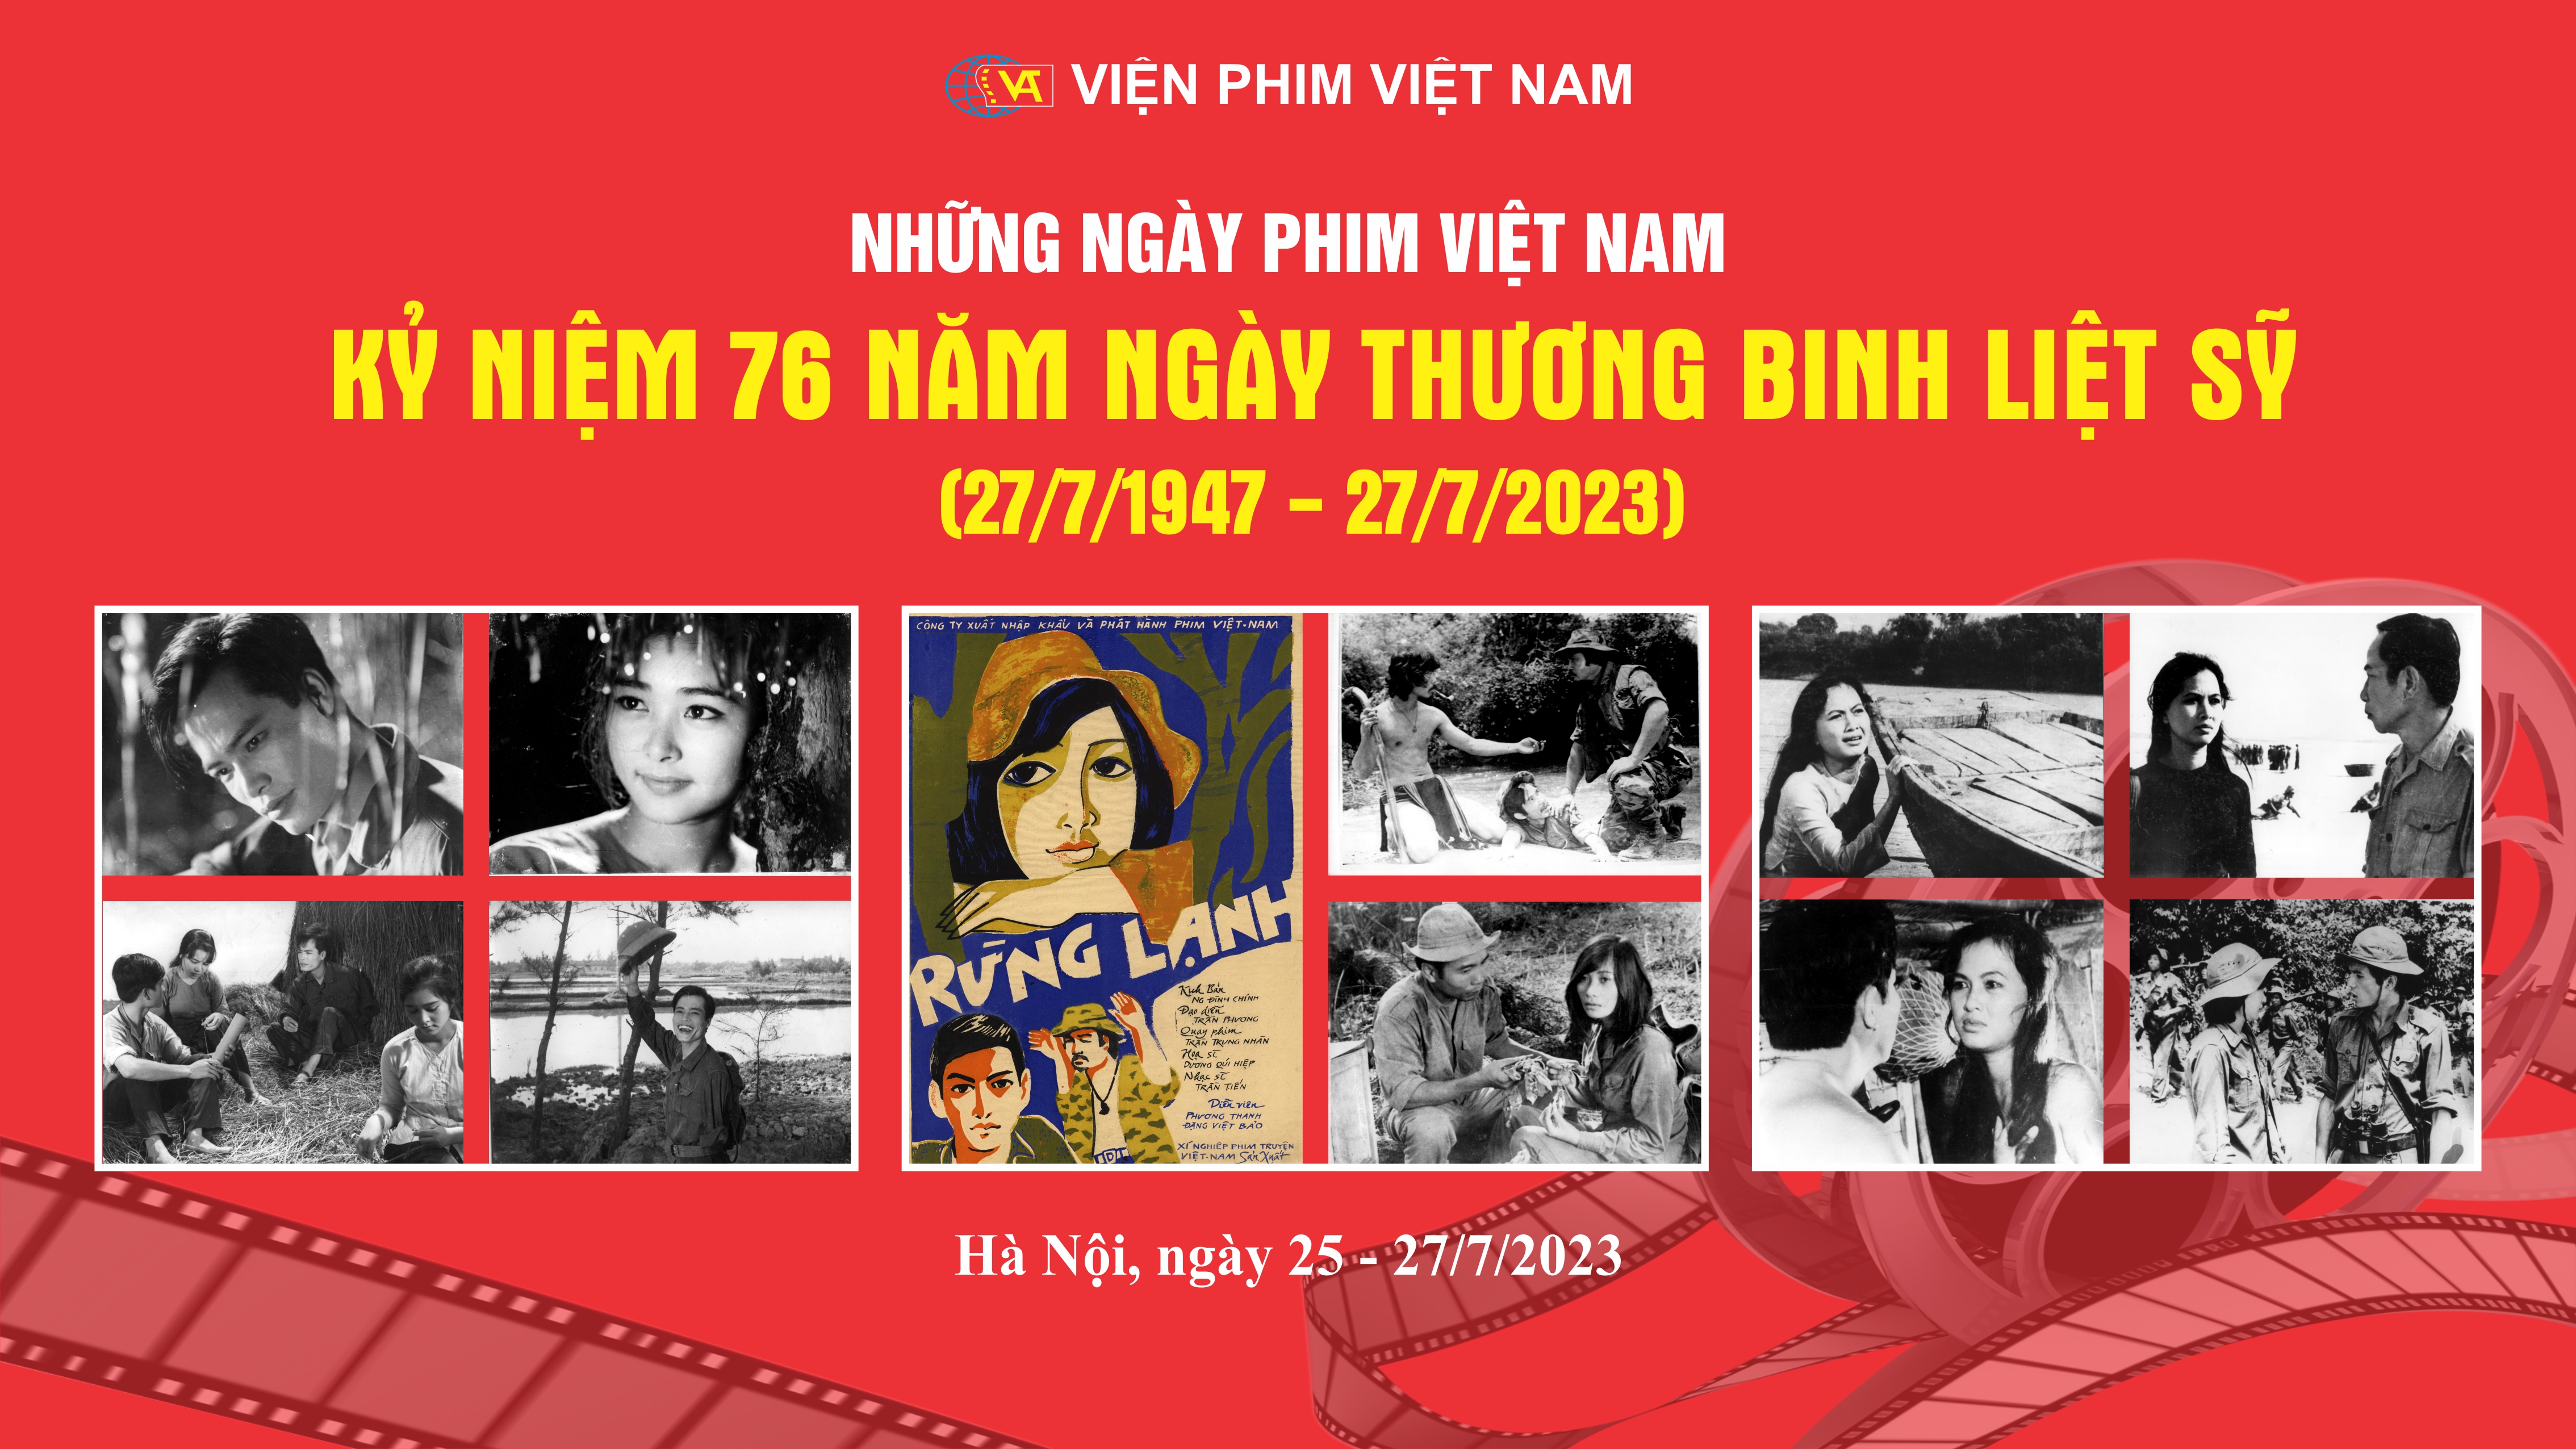 Viện Phim Việt Nam tổ chức Hội nghị Sơ kết công tác 6 tháng đầu năm và triển khai công tác 6 tháng cuối năm 2023